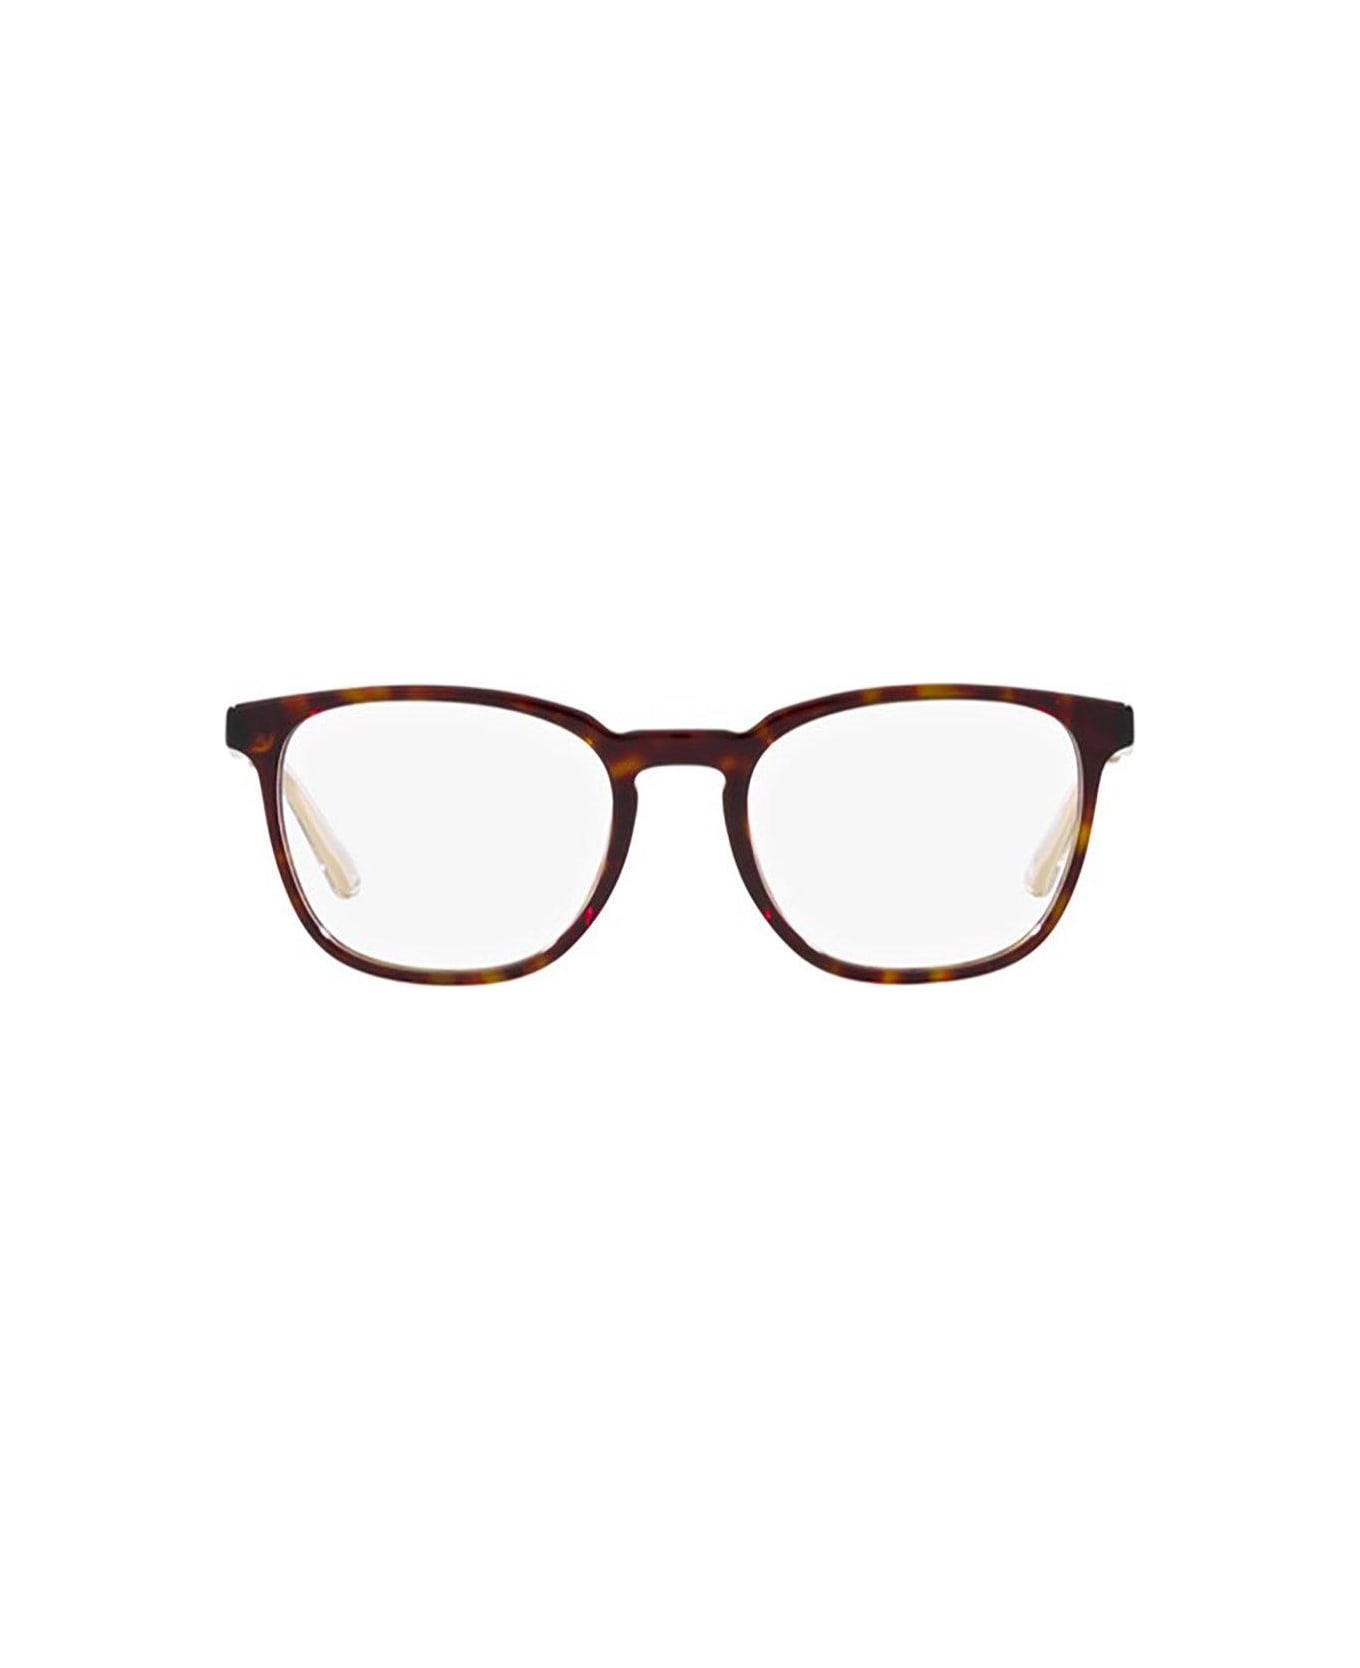 Prada Eyewear Squared Frame Glasses - 2AU1O1 アイウェア